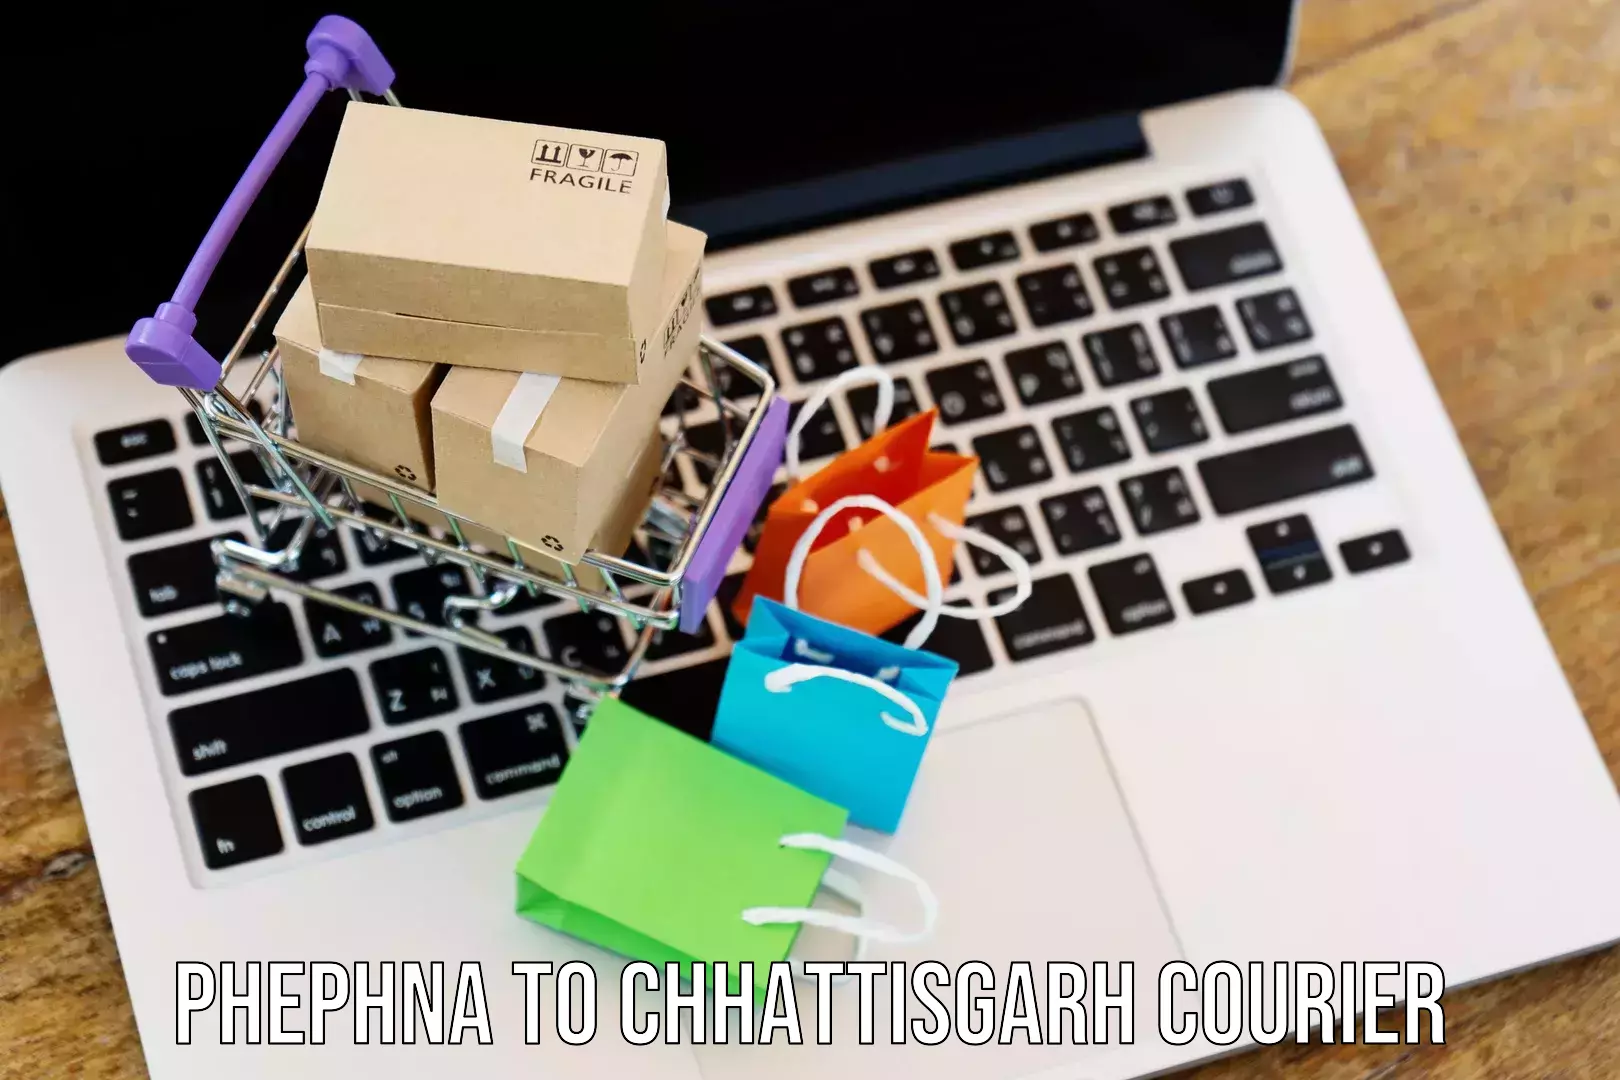 Scheduled delivery Phephna to Chhattisgarh